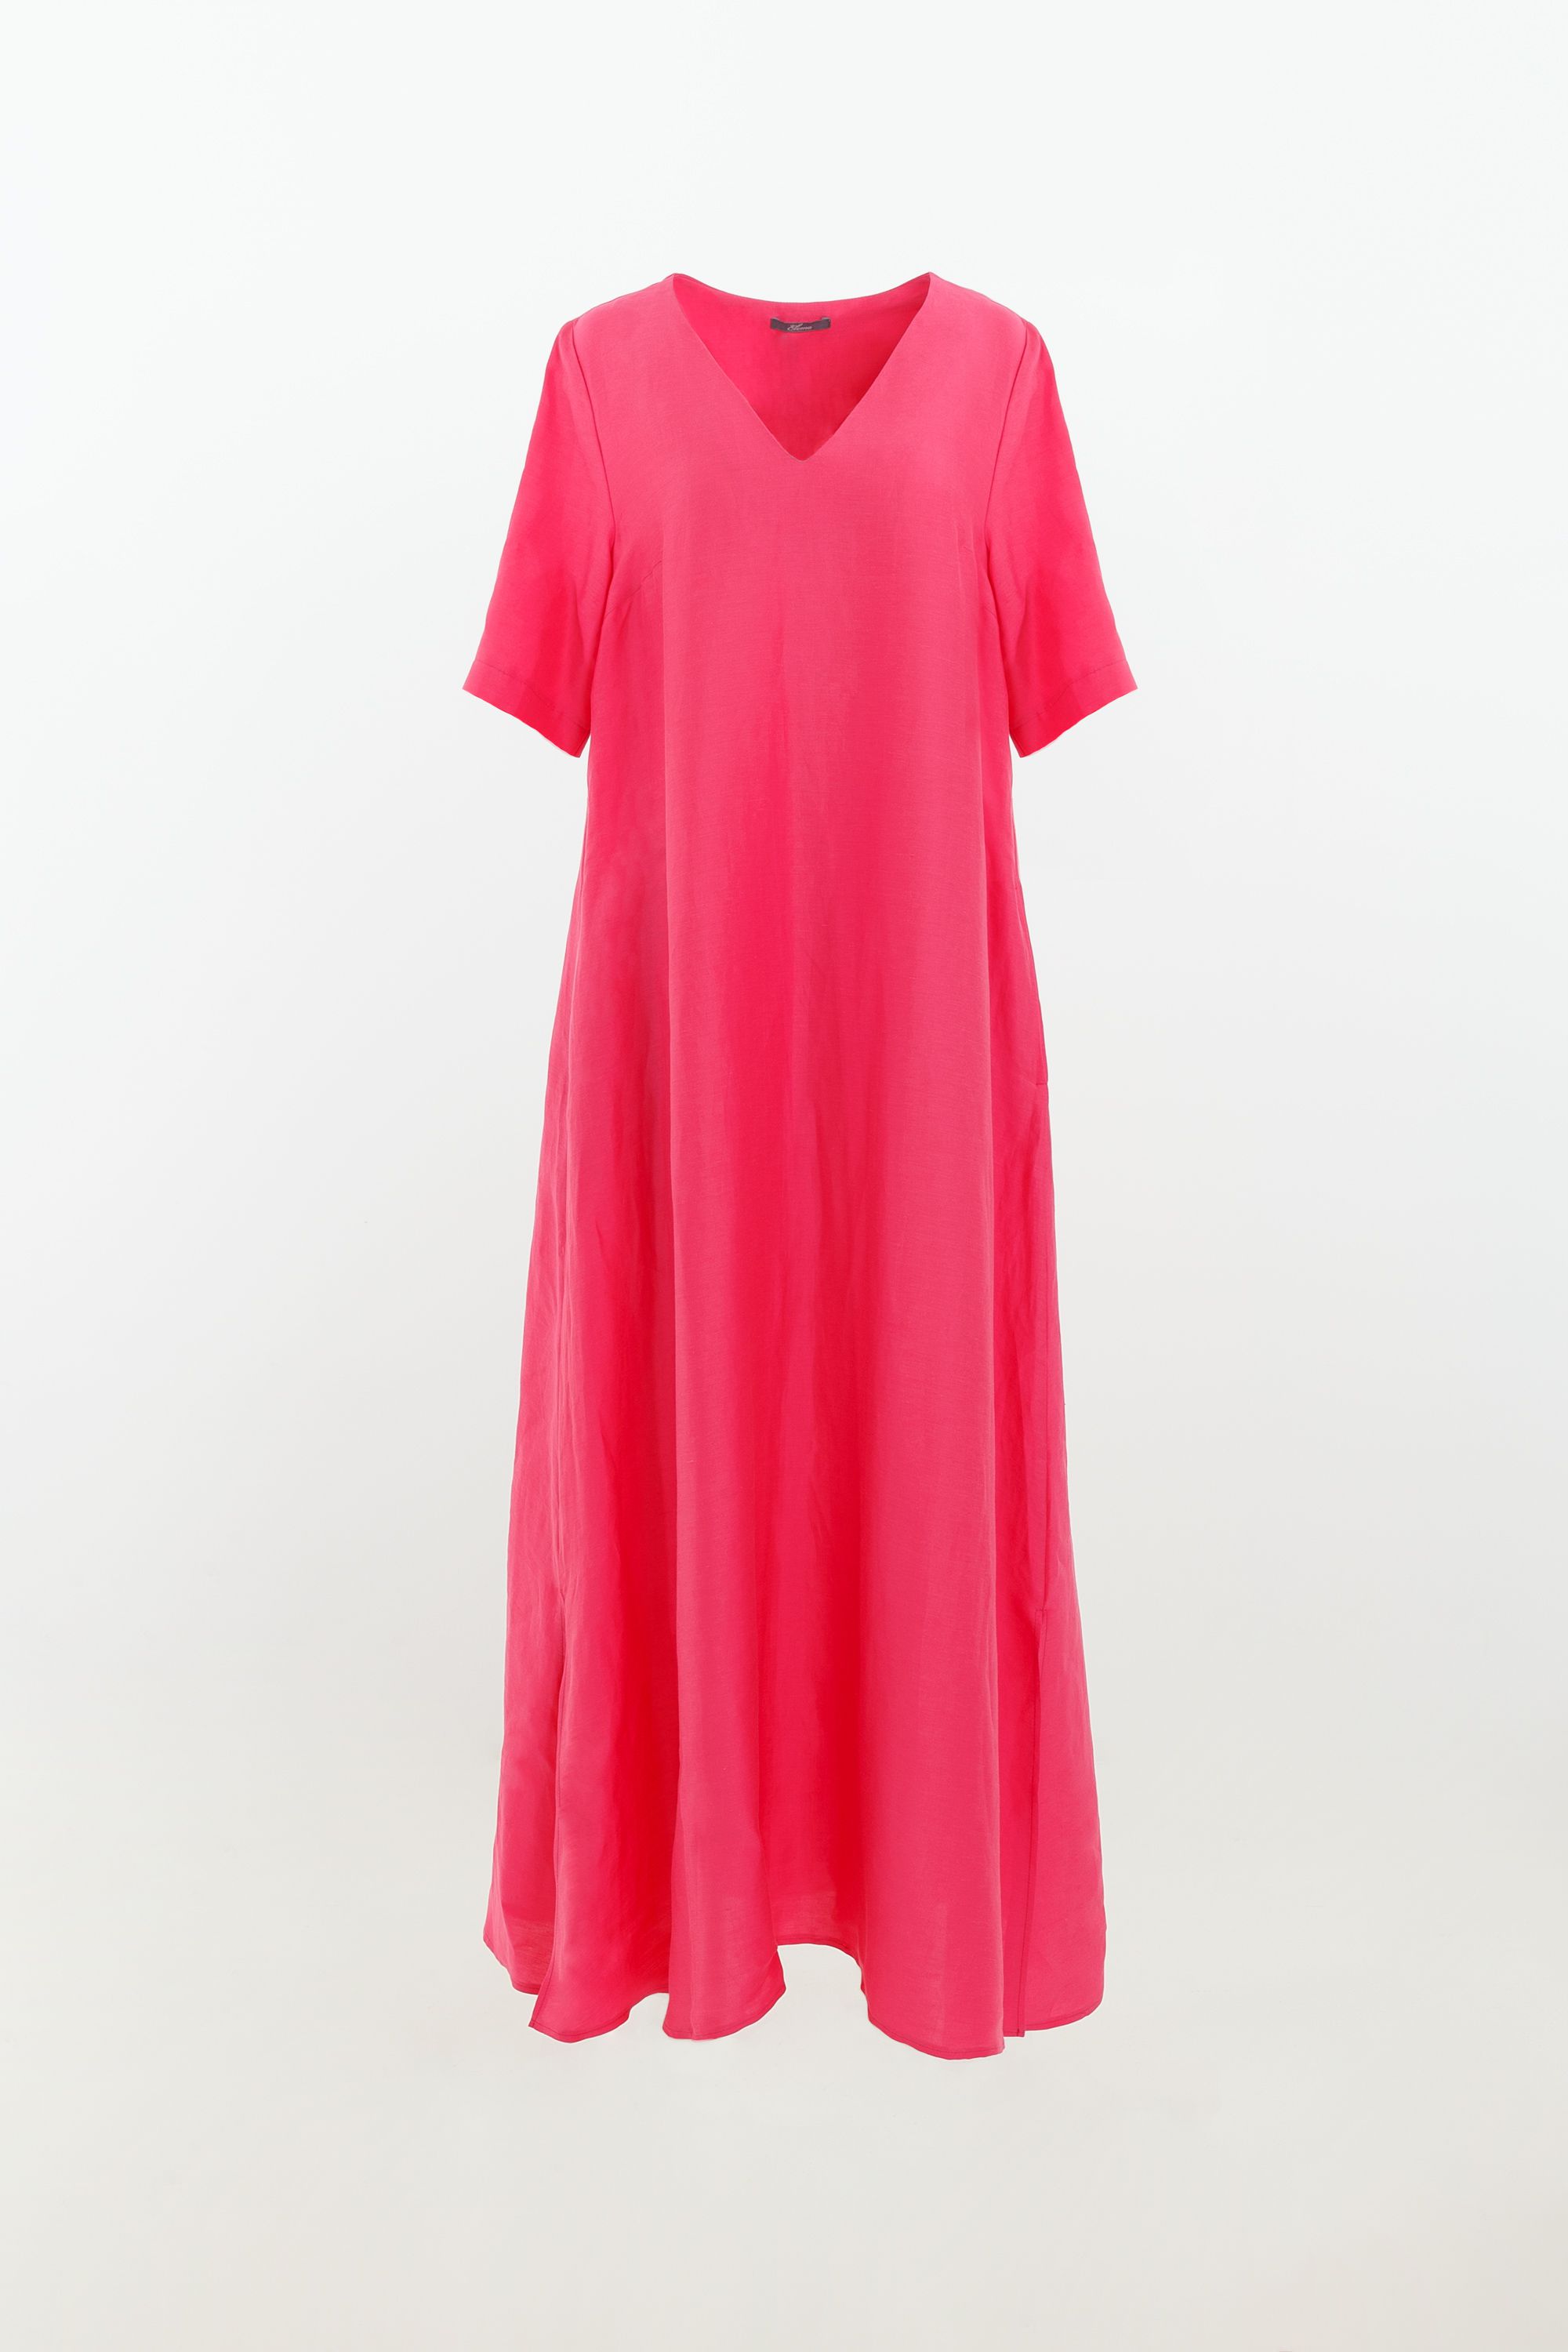 Платье женское 5К-11943-1